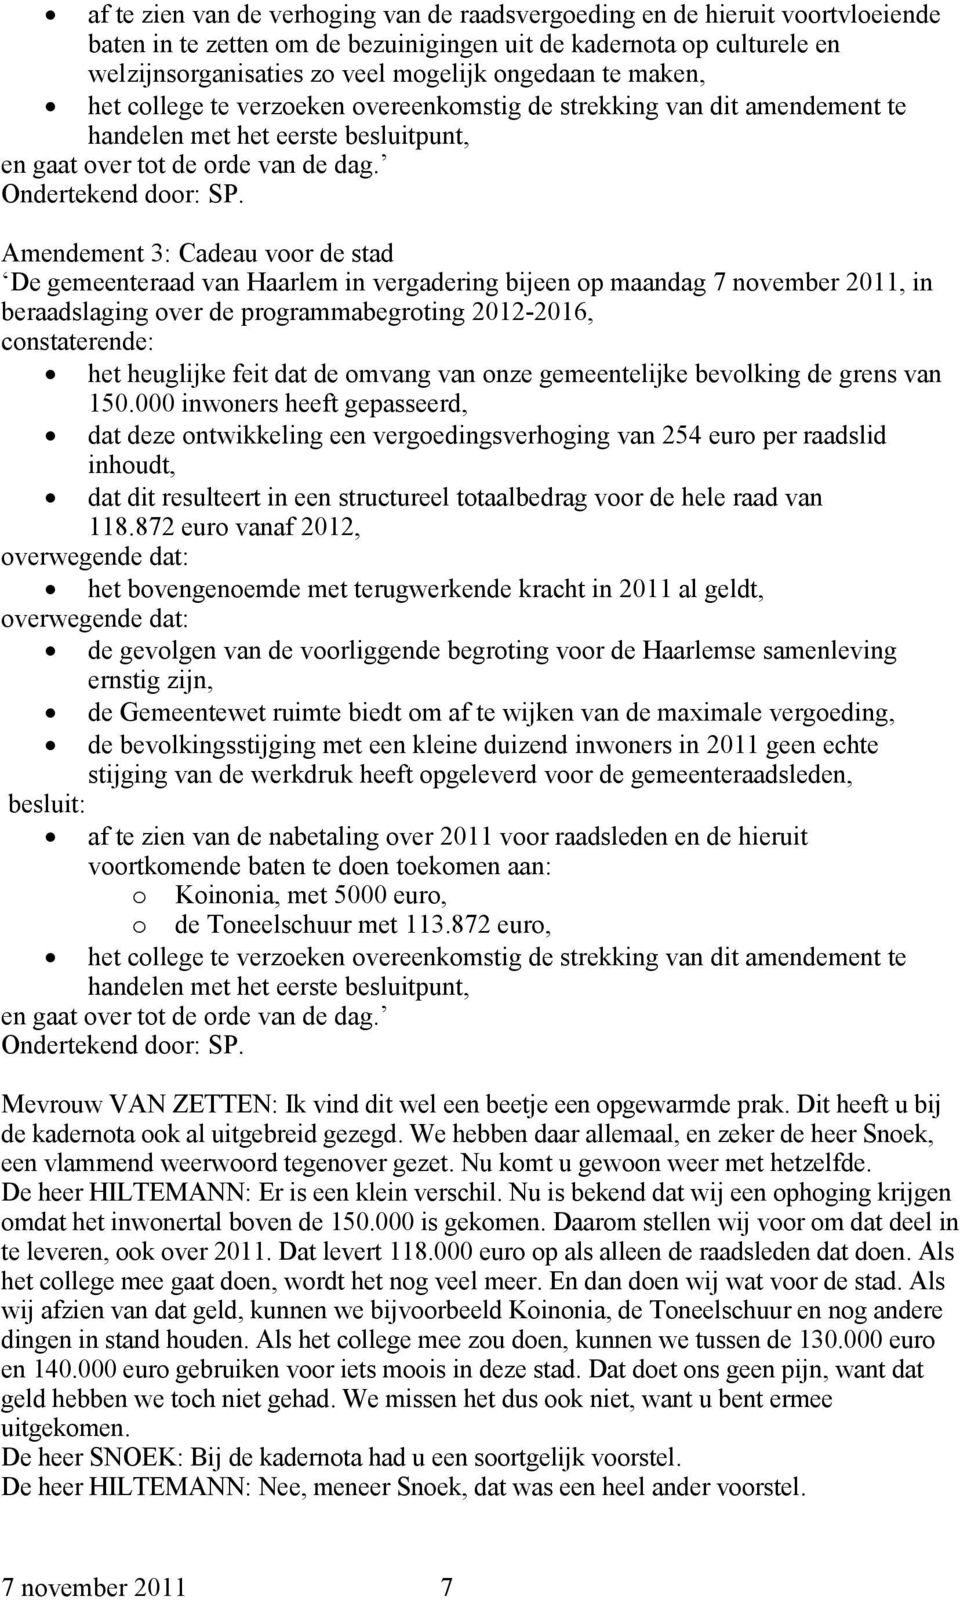 Amendement 3: Cadeau voor de stad De gemeenteraad van Haarlem in vergadering bijeen op maandag 7 november 2011, in beraadslaging over de programmabegroting 2012-2016, constaterende: het heuglijke